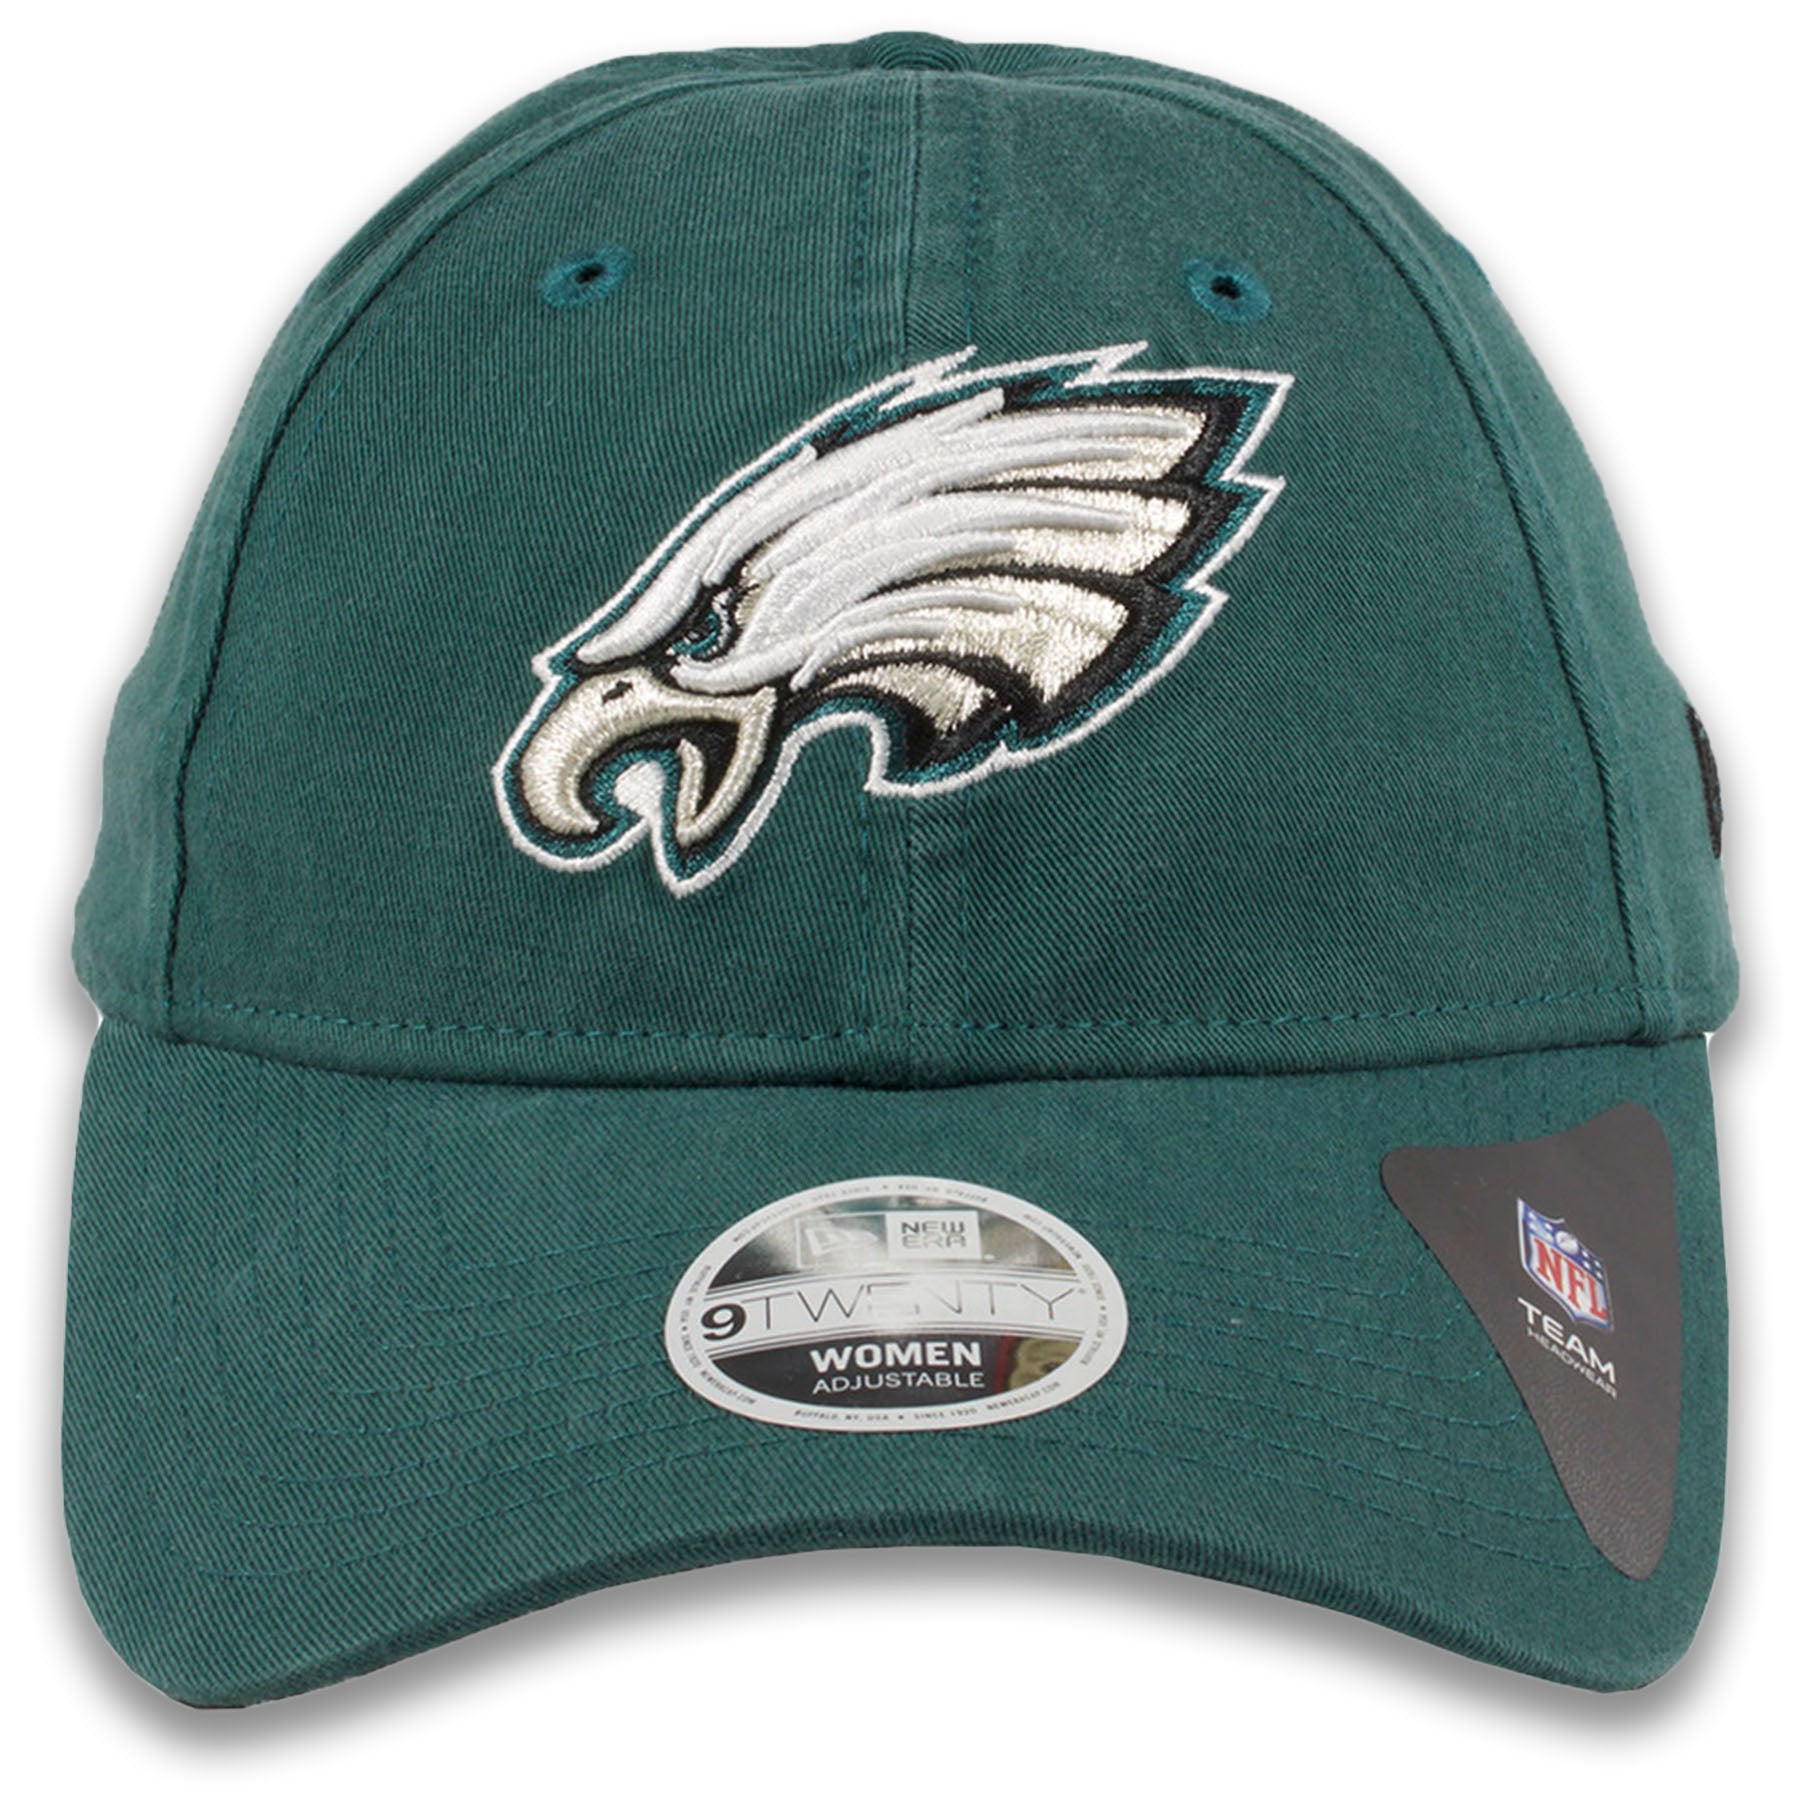 women's philadelphia eagles hat